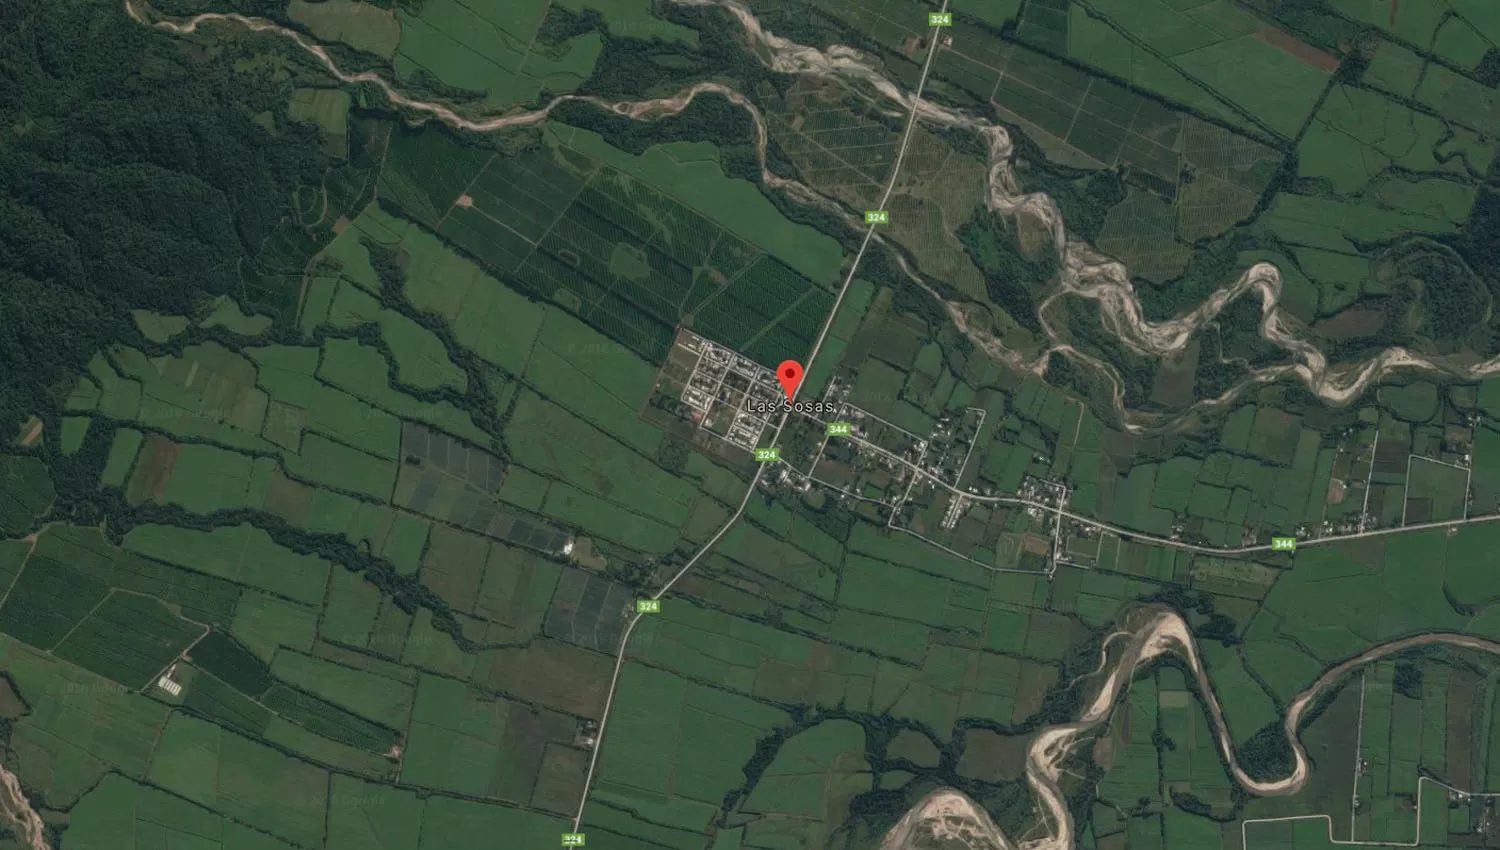 El punto rojo señala la localidad de Las Sosas. Cerca de la ruta que atraviesa a esta localidad encontraron el cuerpo sin vida de la mujer. (Captura de pantalla de Google Maps)